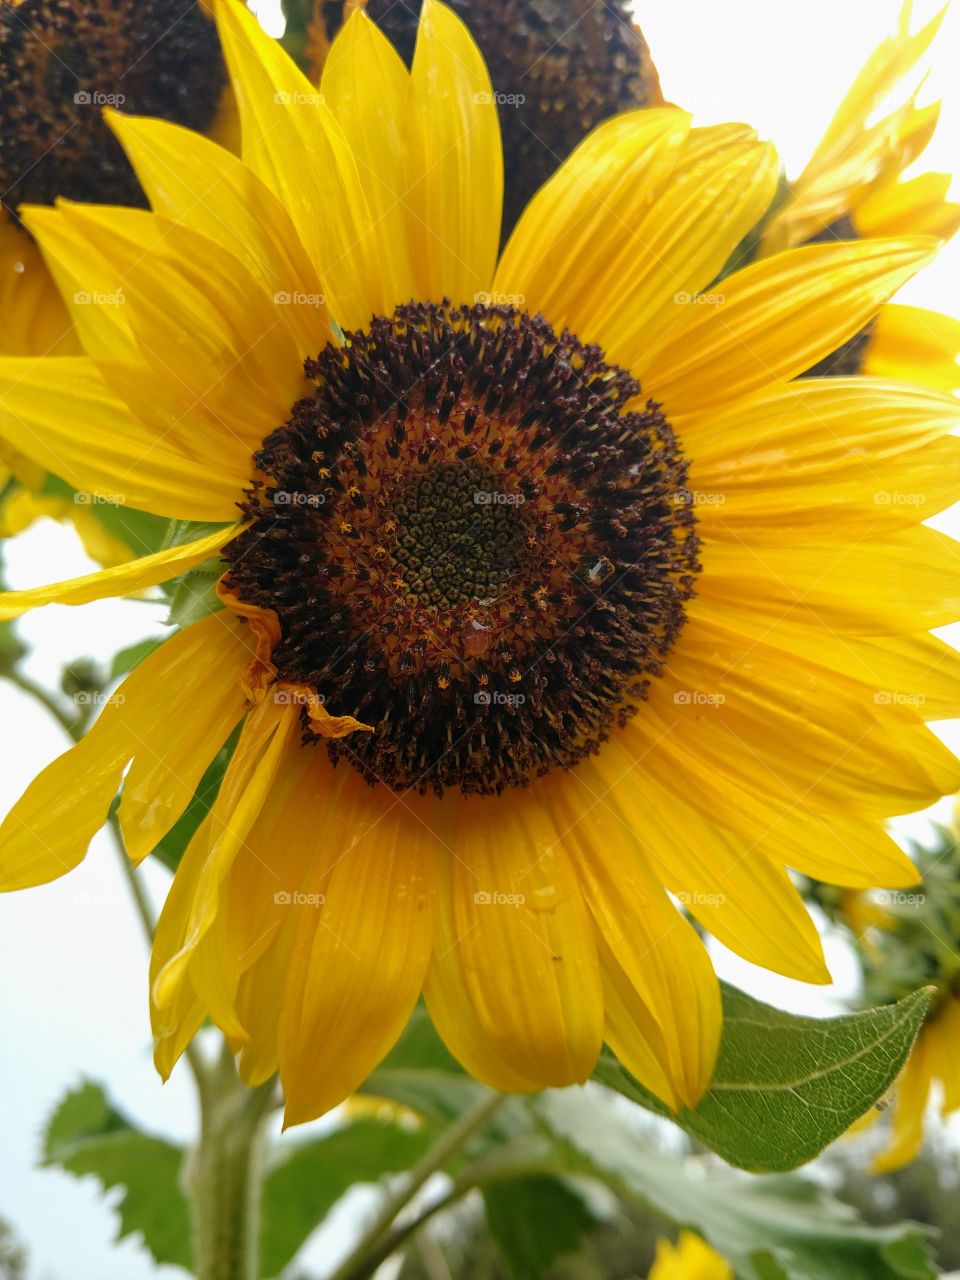 The Wet Sunflower